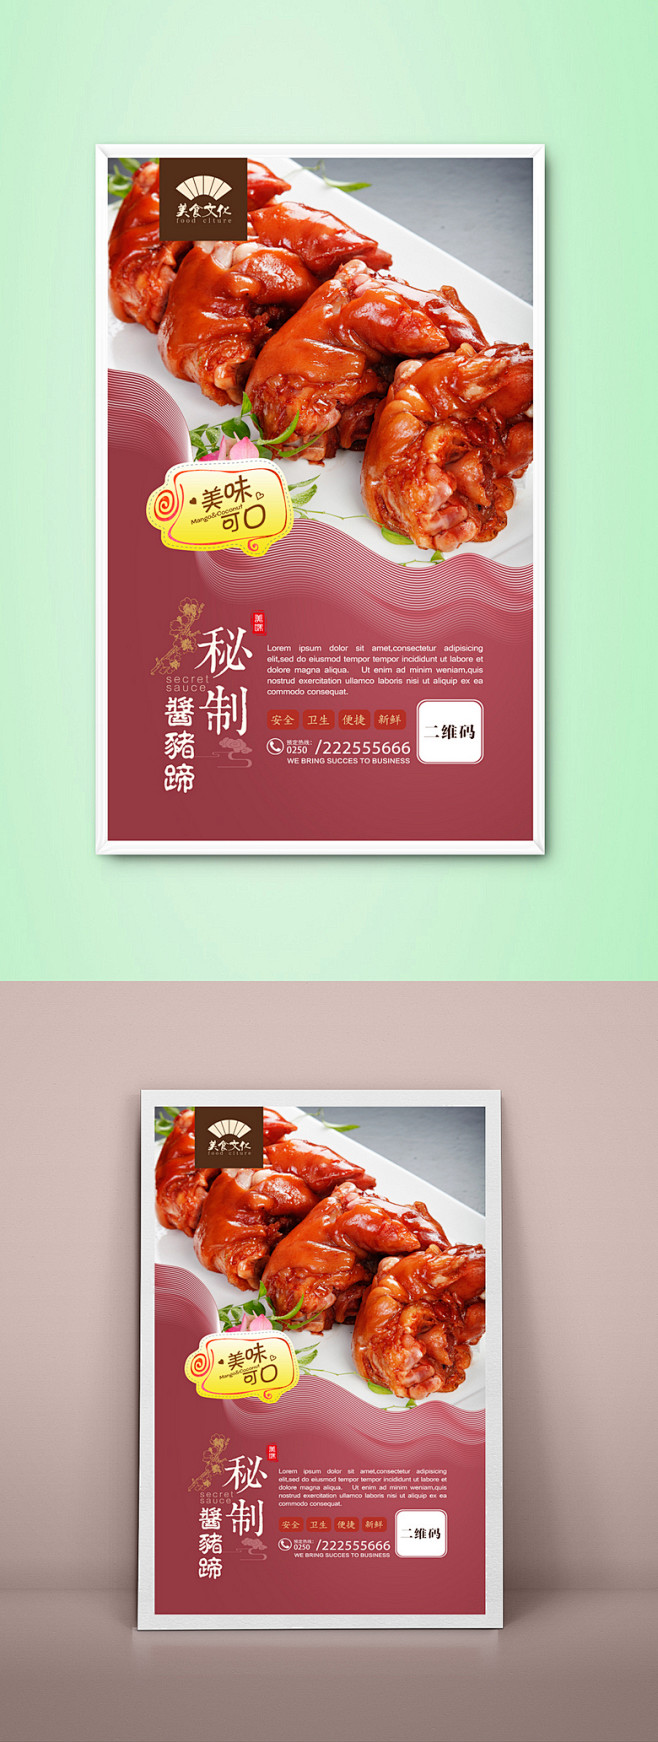 酱猪蹄文化宣传海报设计 餐馆酱猪蹄文化宣传展板设计 大排档文化